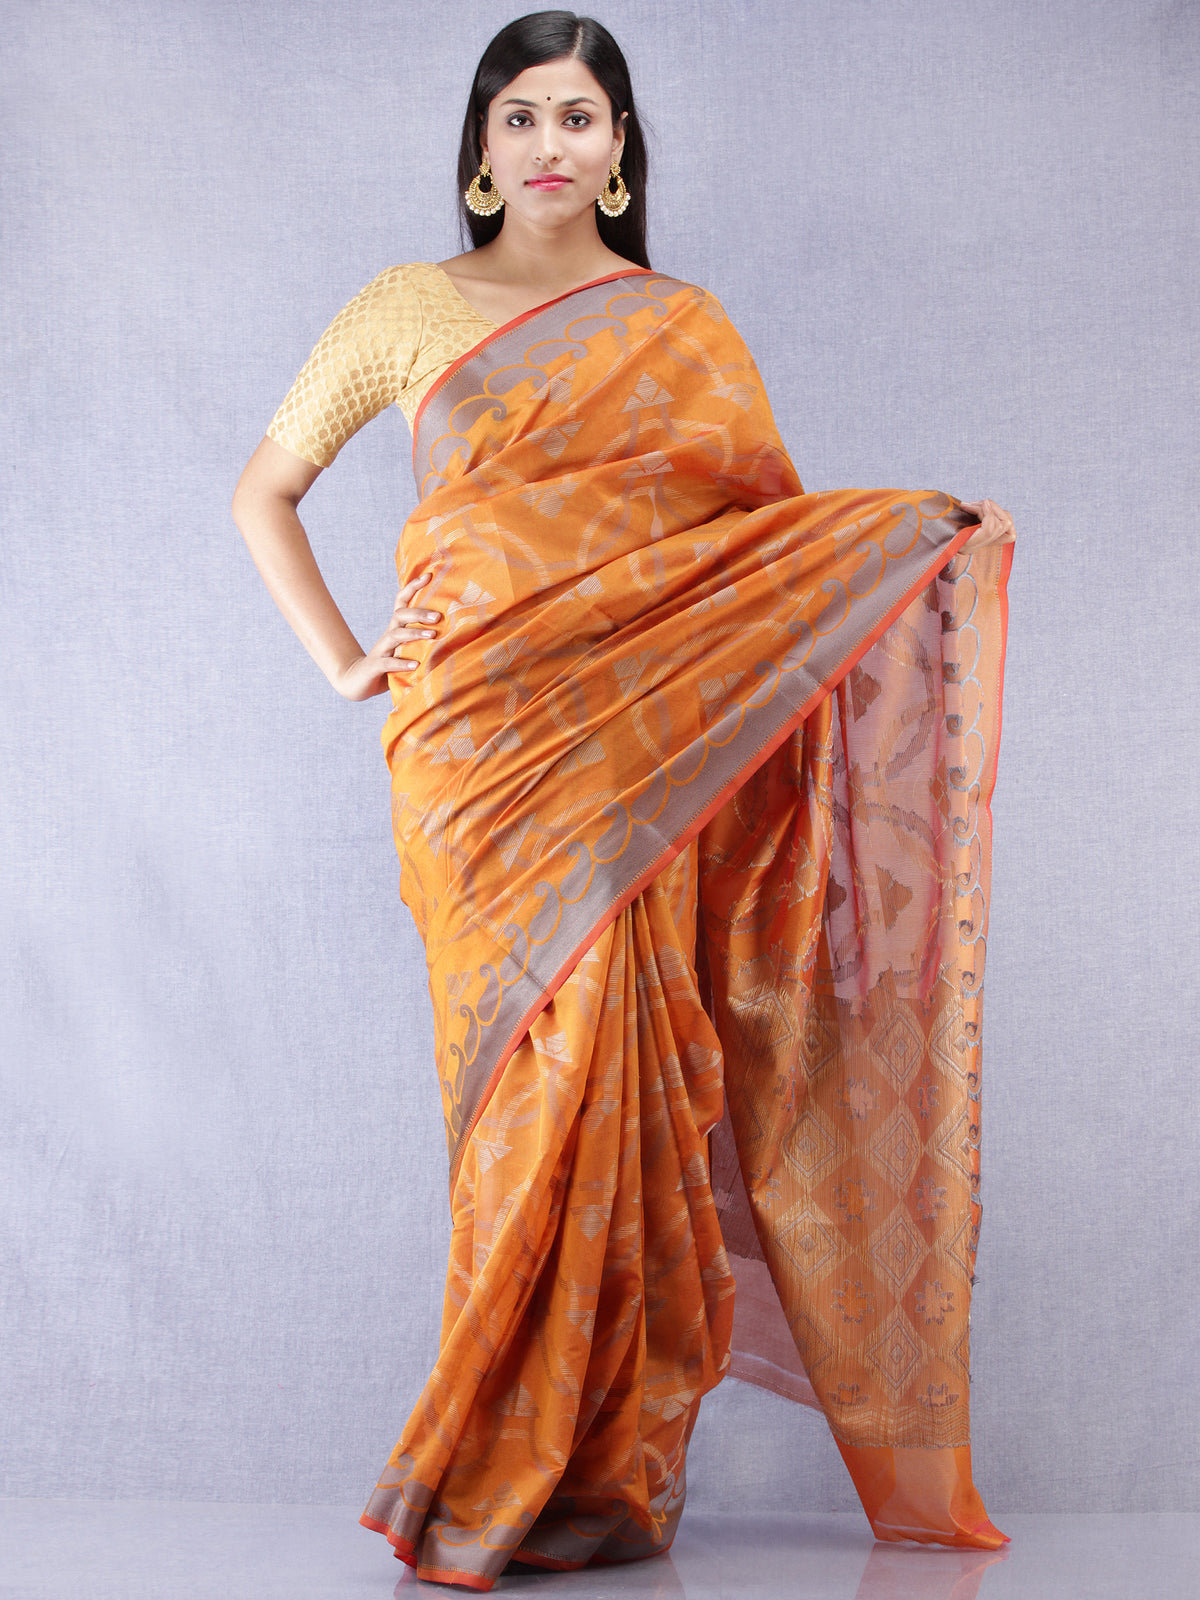 Banarasee Chanderi Silk Saree With Resham Work - Ginger Orange & Grey  - S031704317